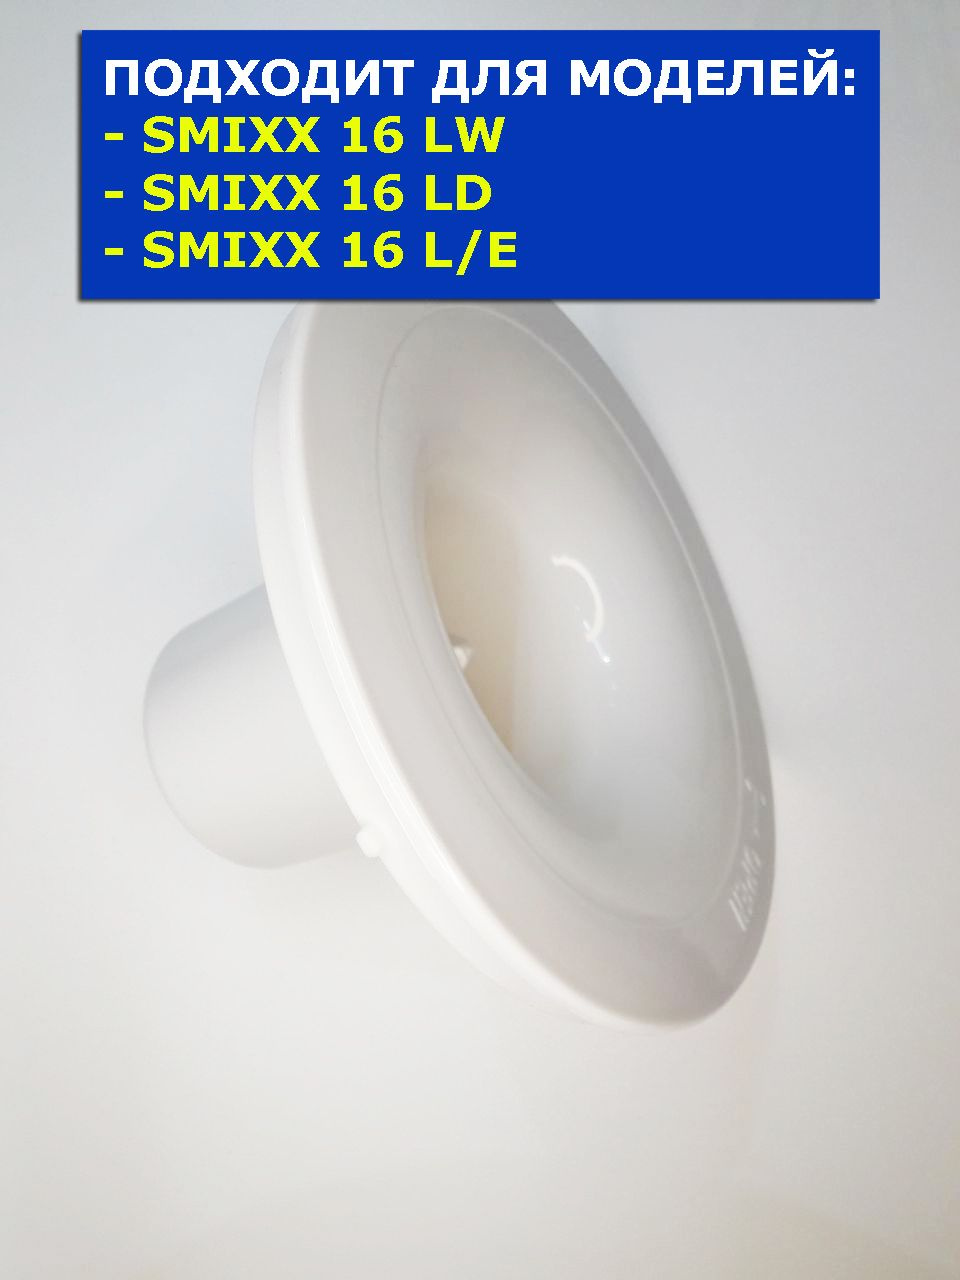 Водоприемник кулера для воды SMixx 16 T/E